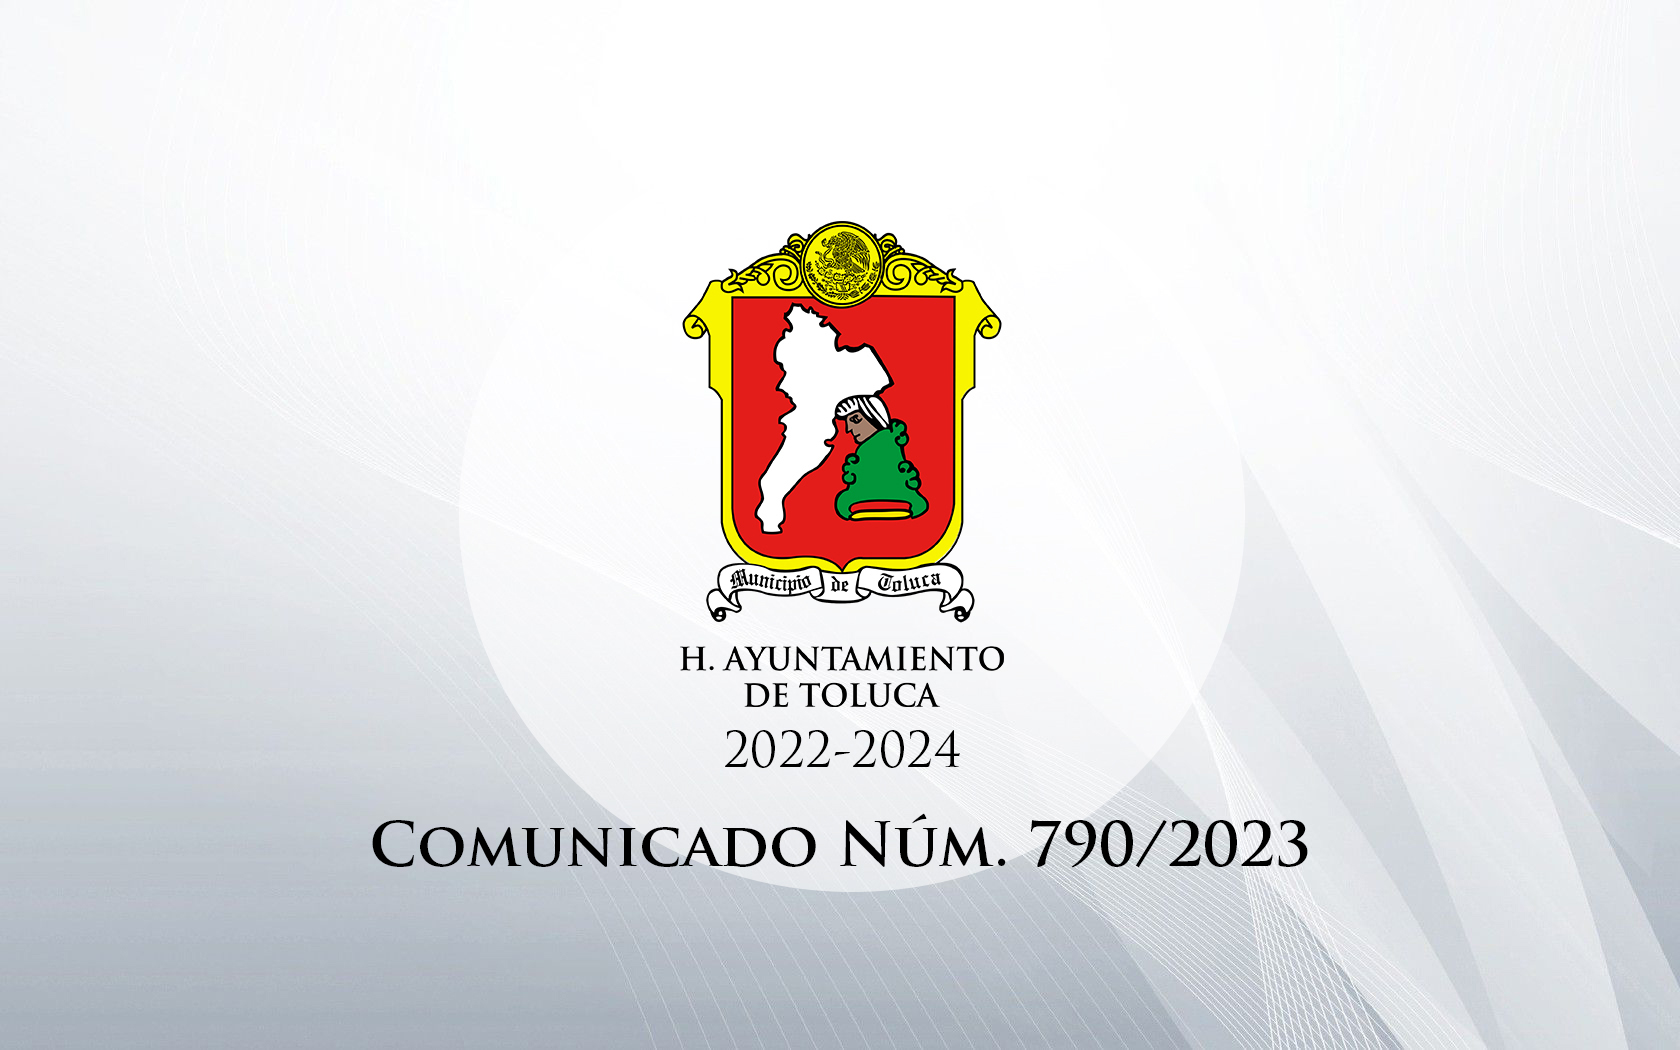 Comunicado Núm. 790/2023